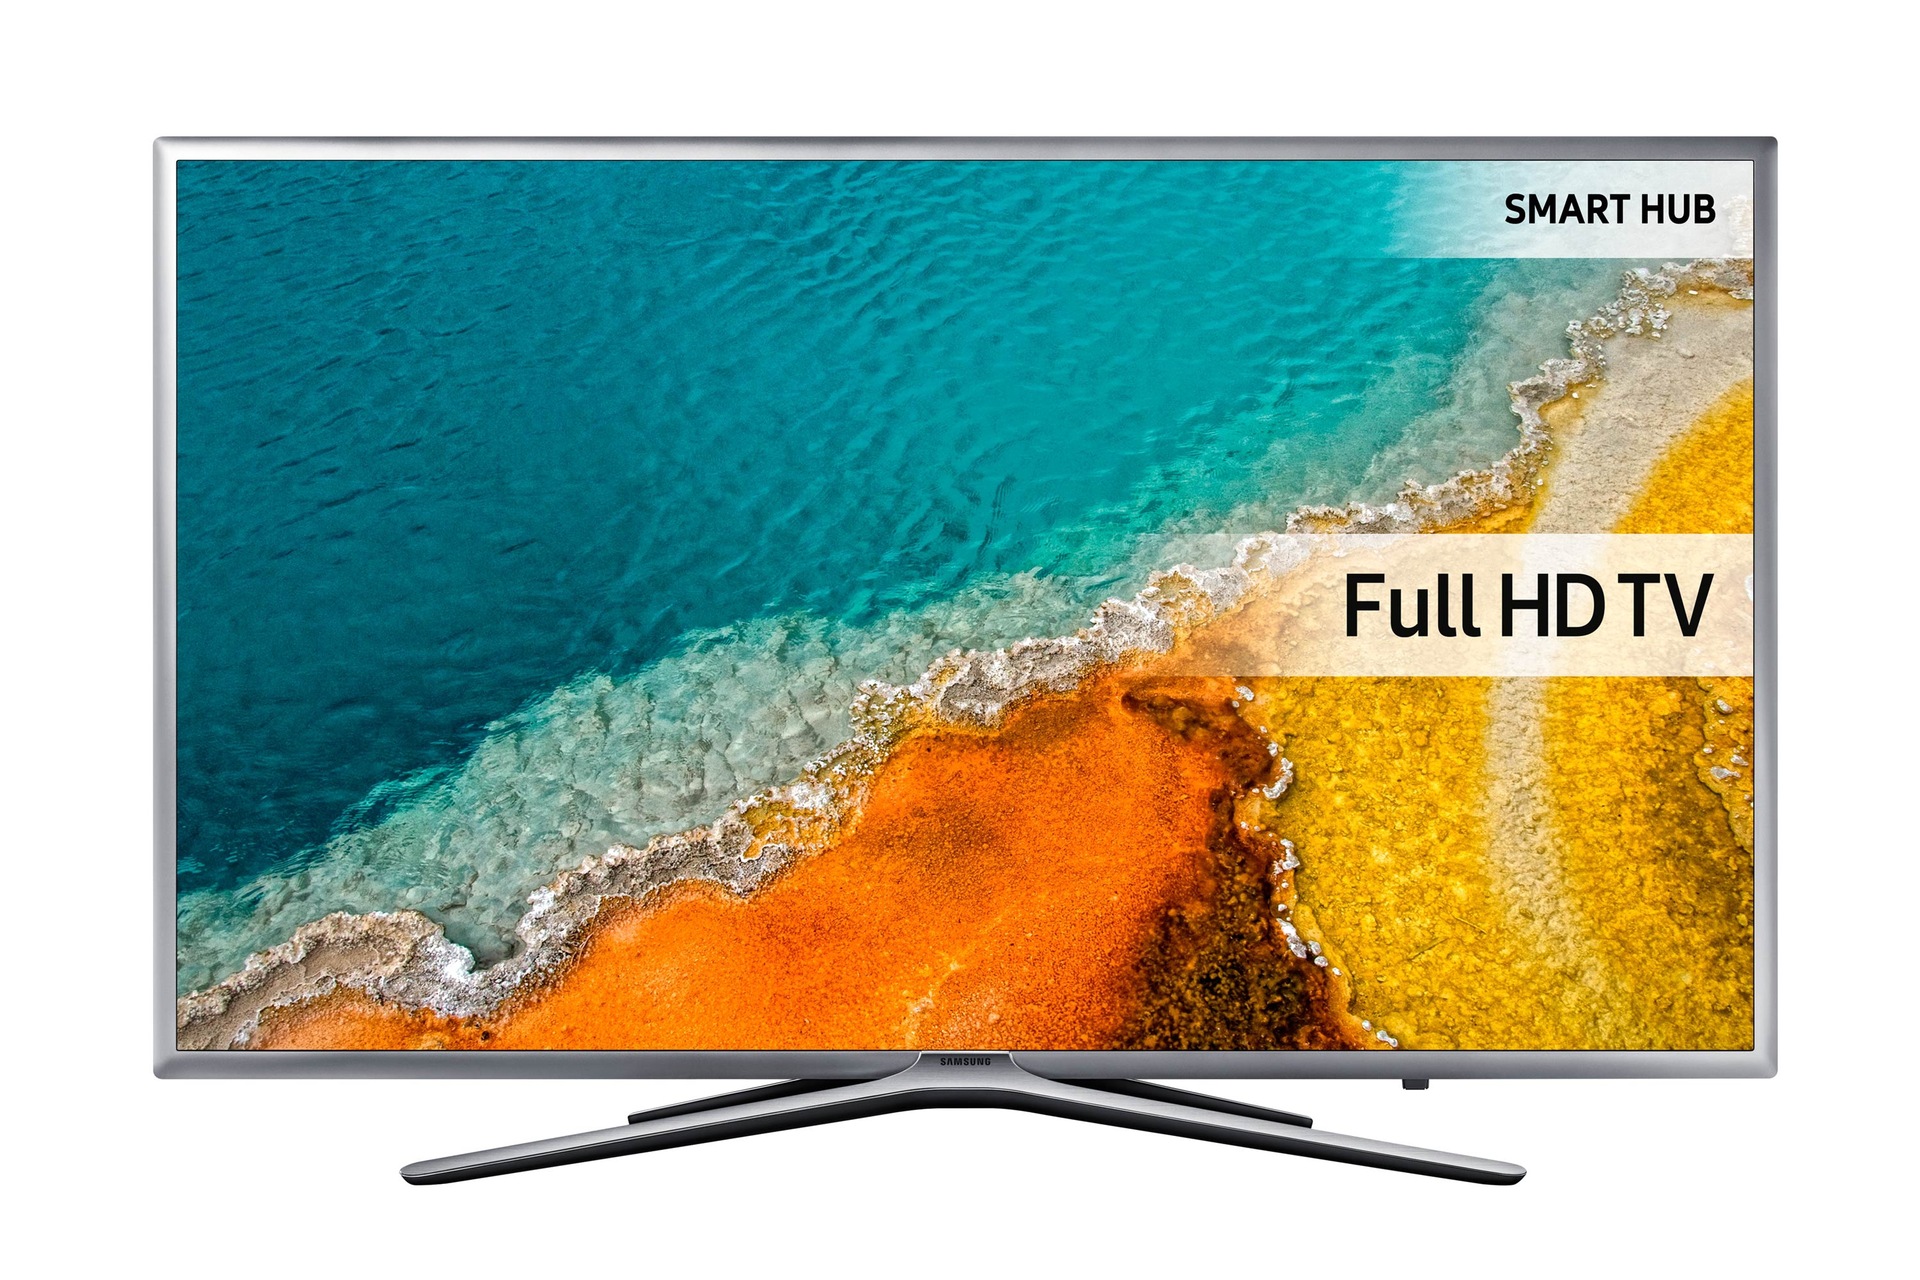 K5600 5 Series Flat FHD Smart TV | Support UK